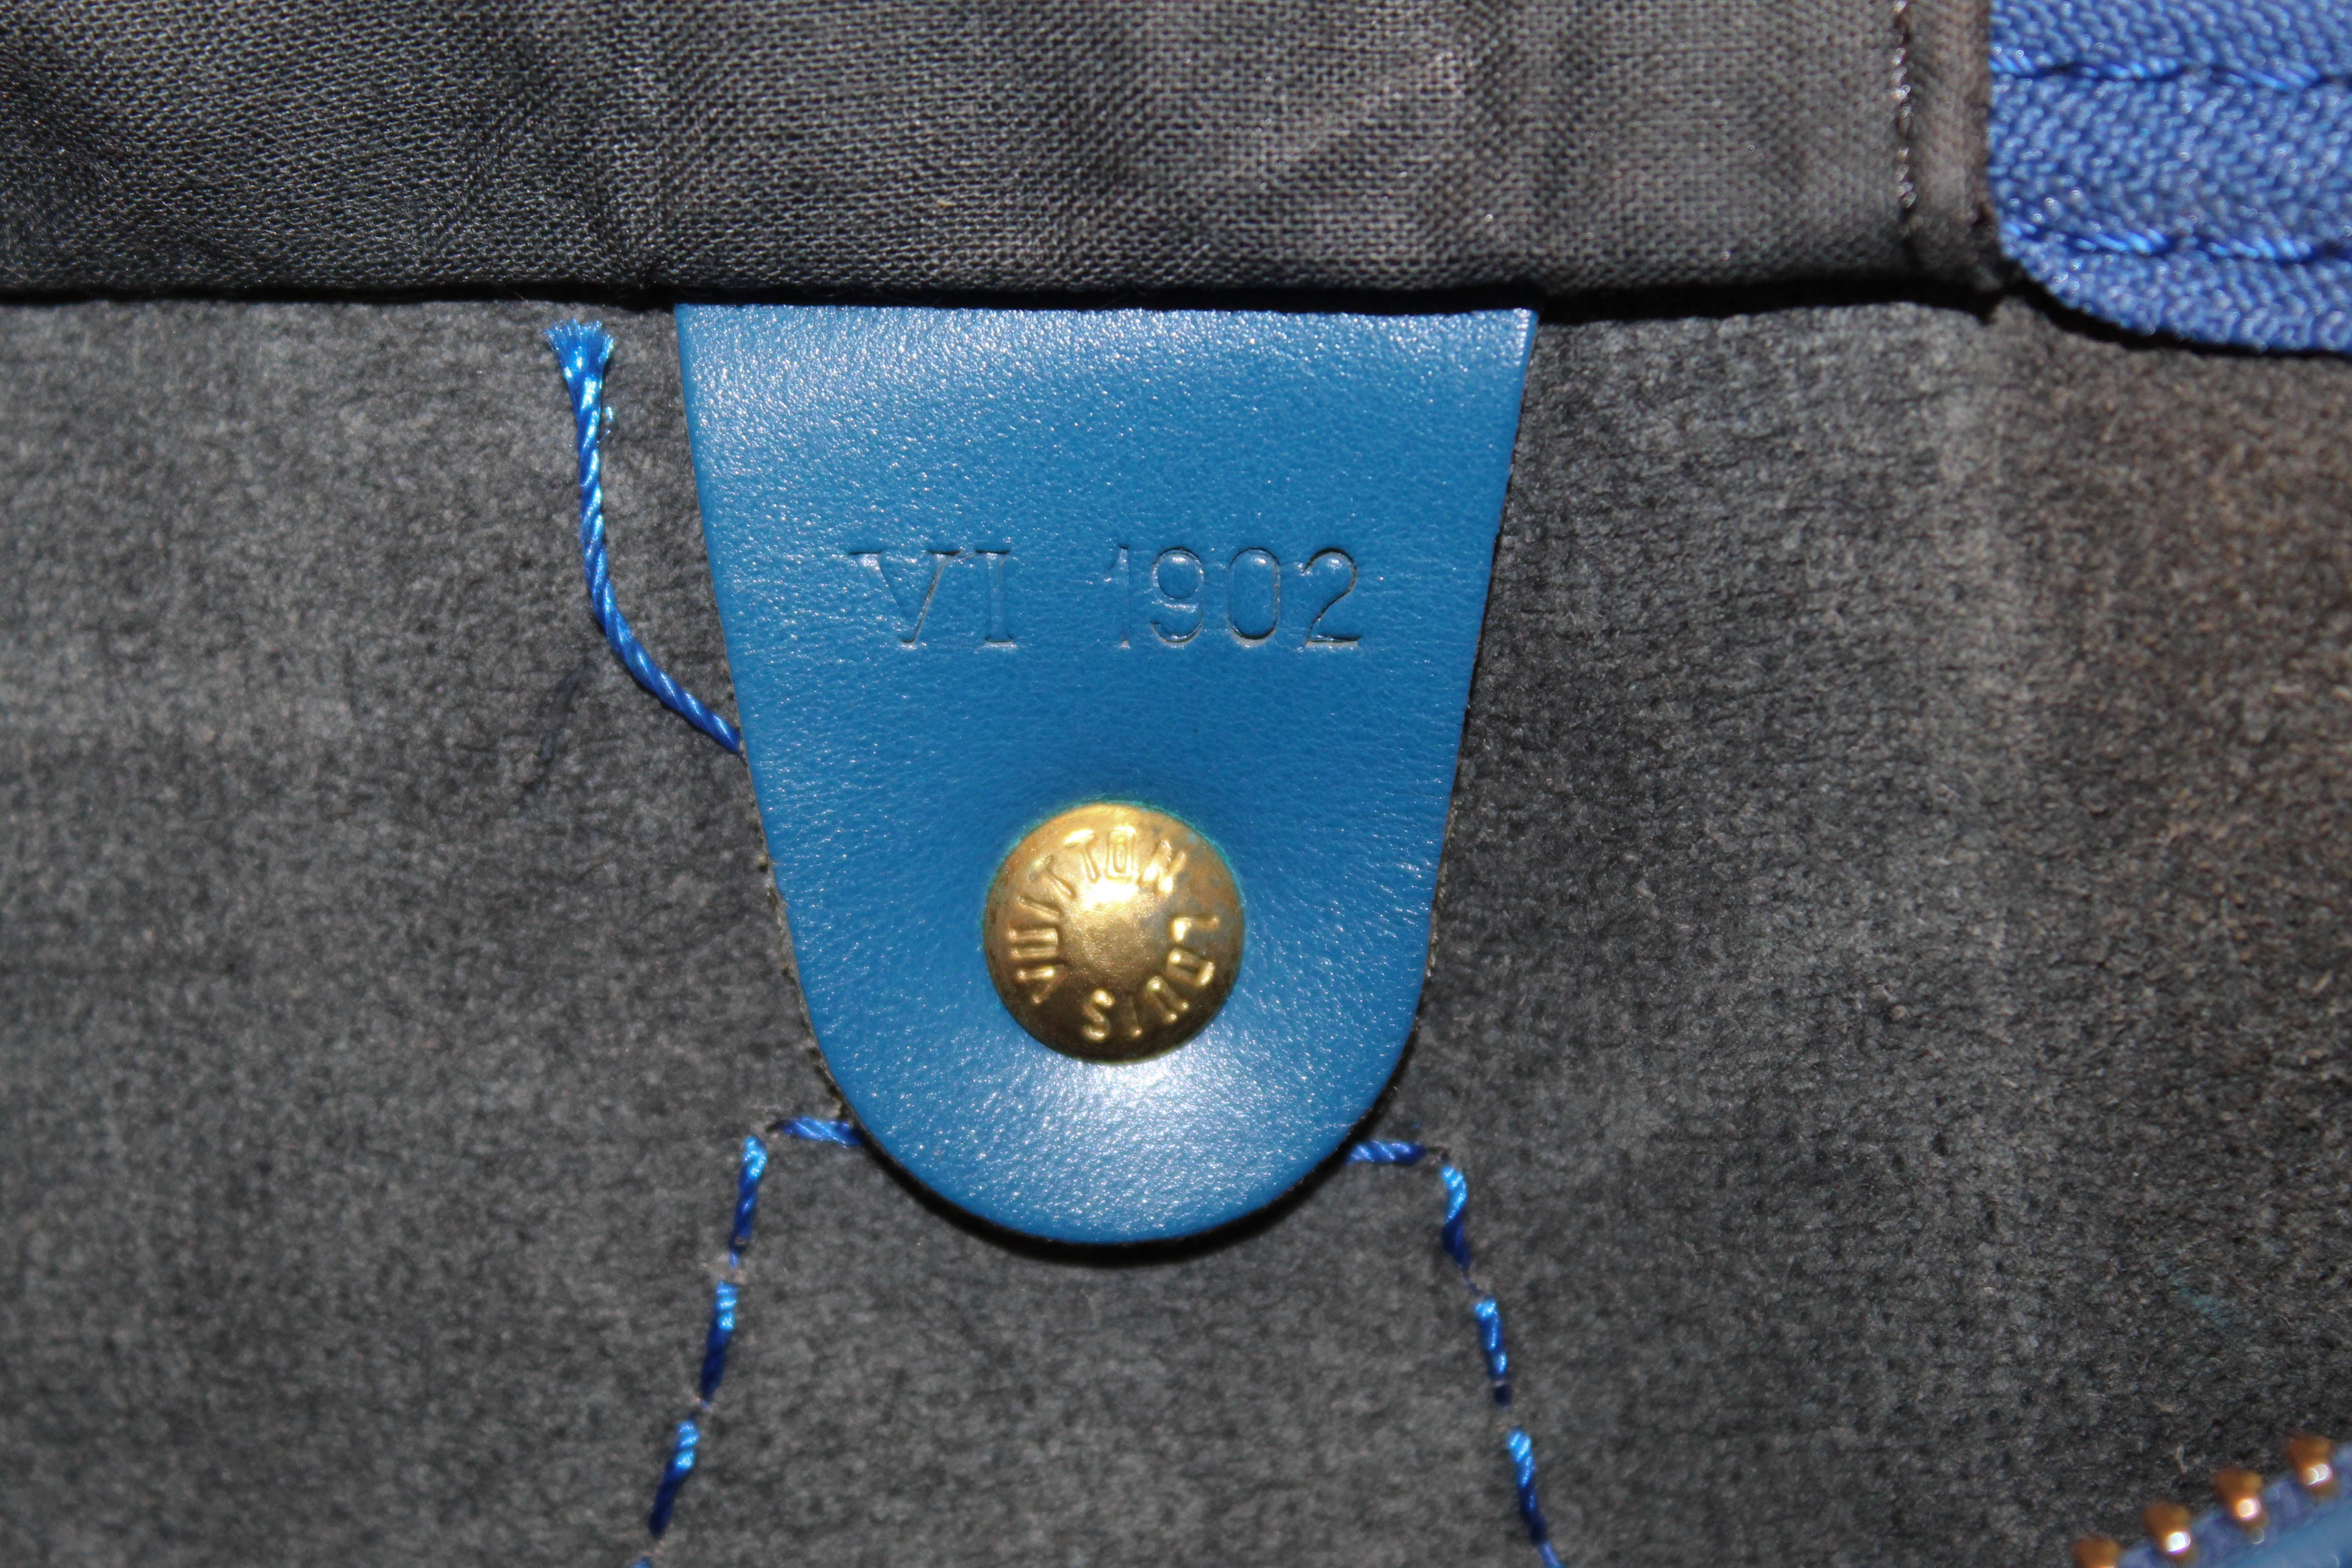 Louis Vuitton Speedy 30 Epi Blue – l'Étoile de Saint Honoré